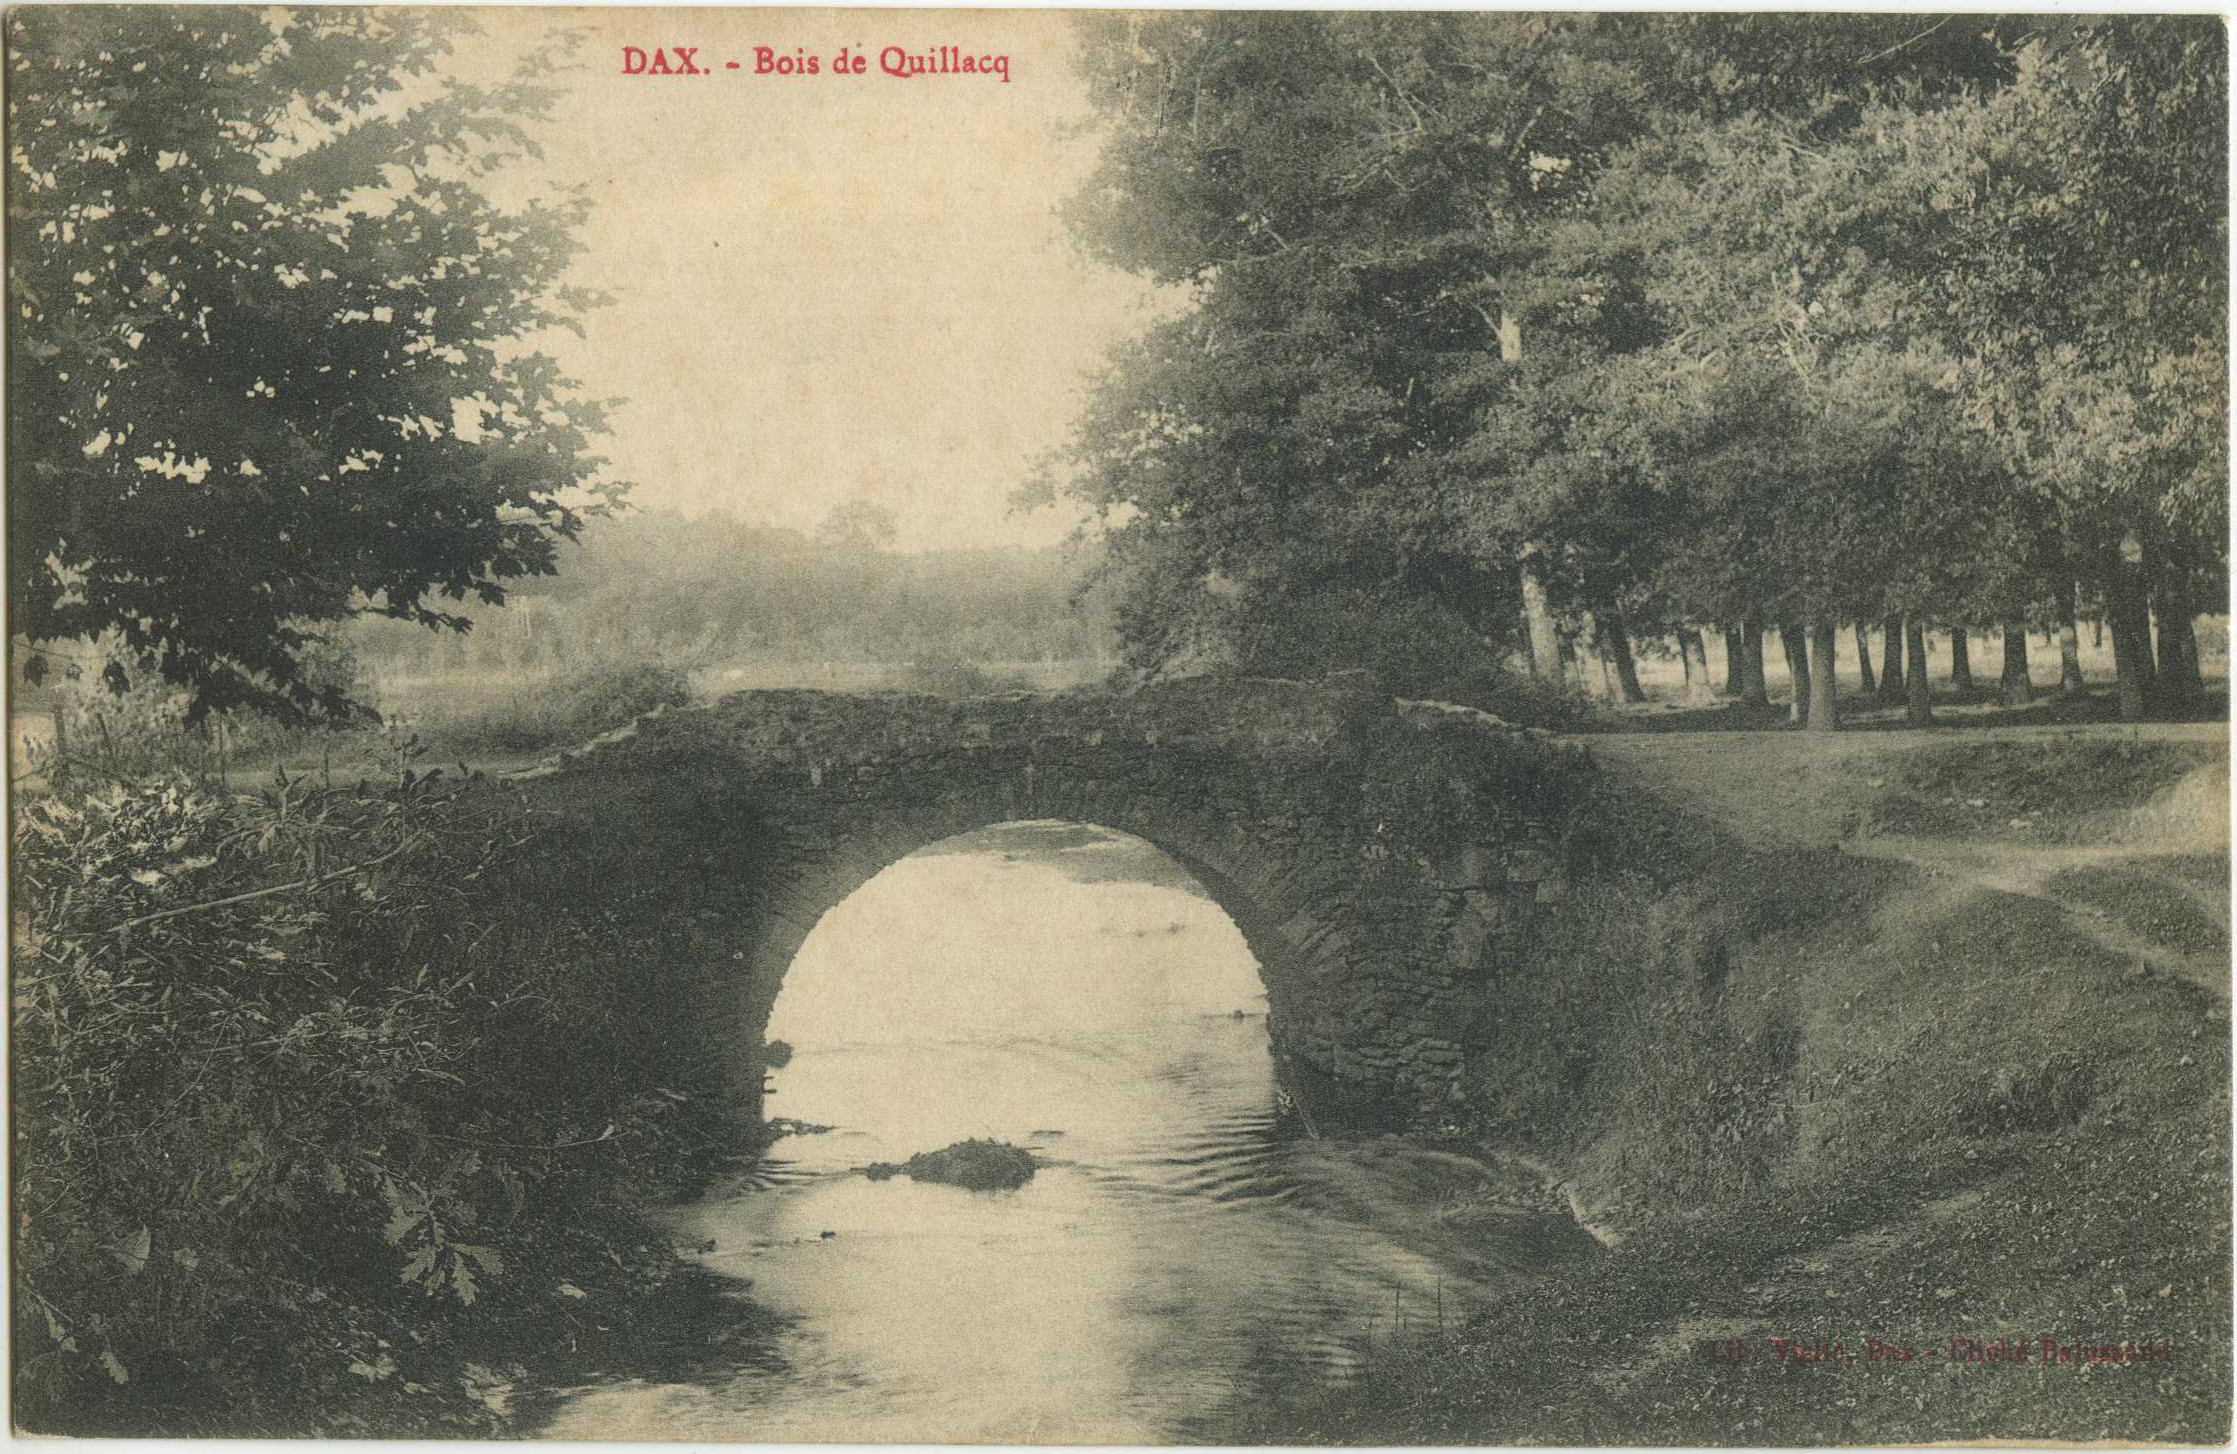 Dax - Bois de Quillacq